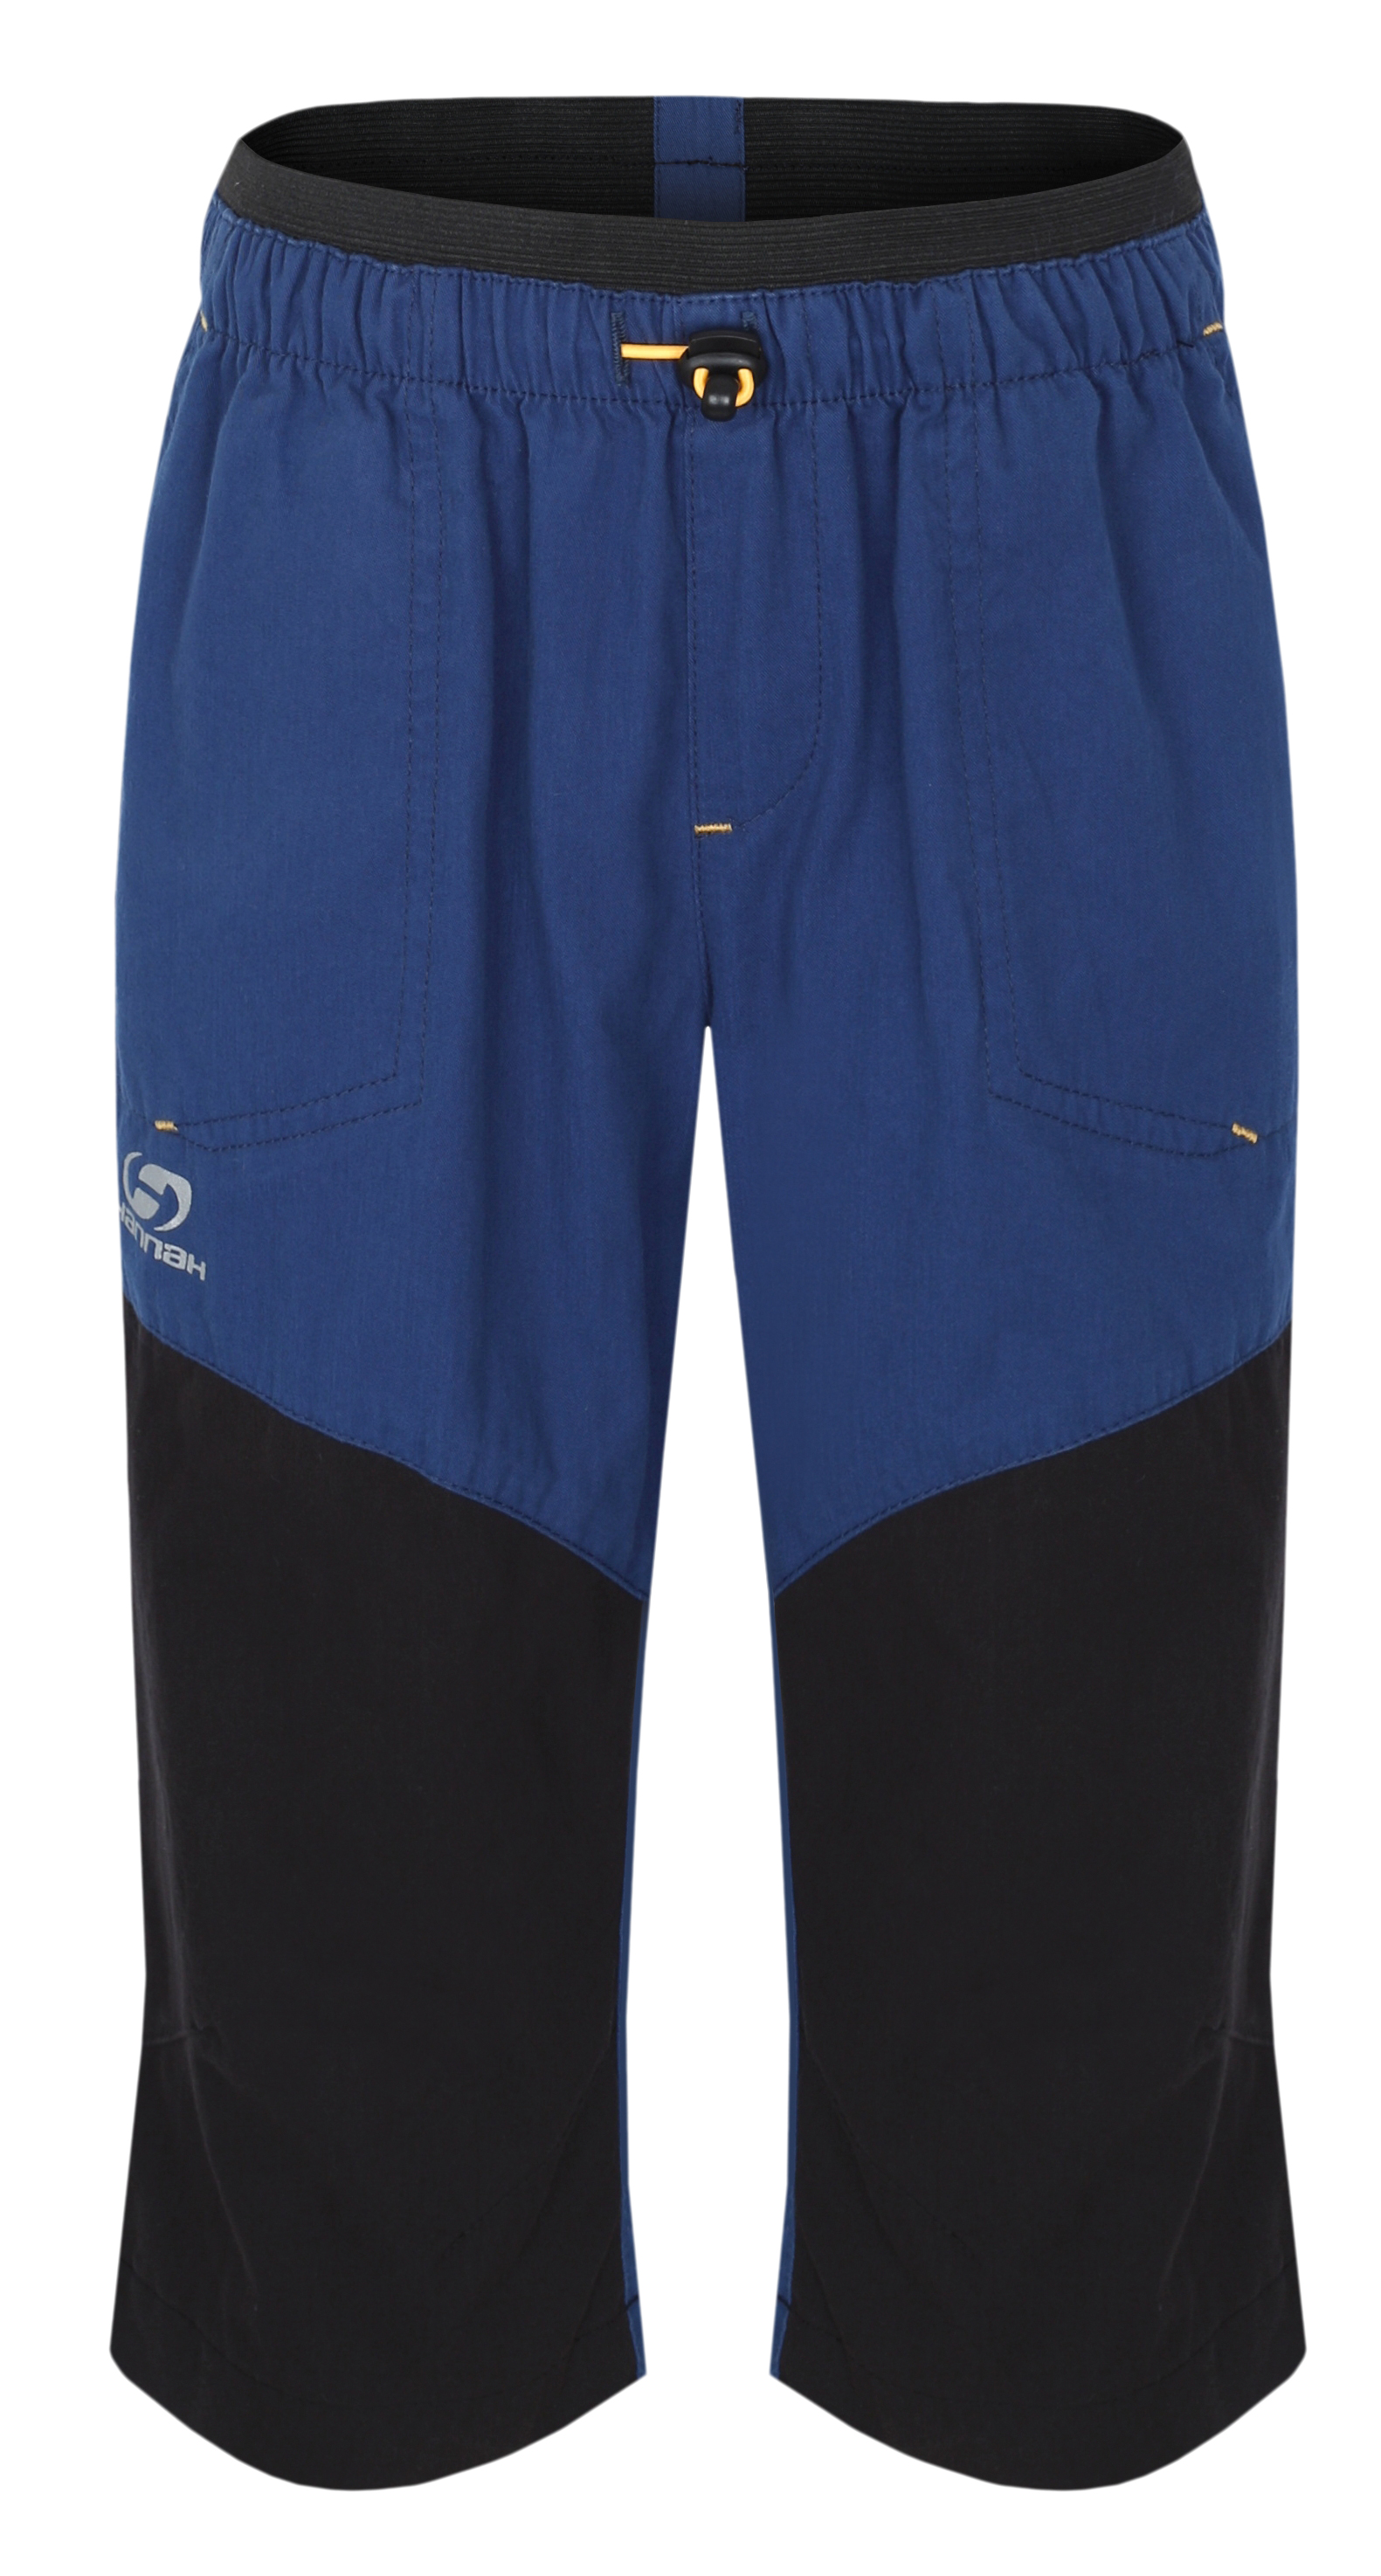 Hannah RUMEX JR ensign blue/anthracite Velikost: 116 dětské 3/4 kalhoty